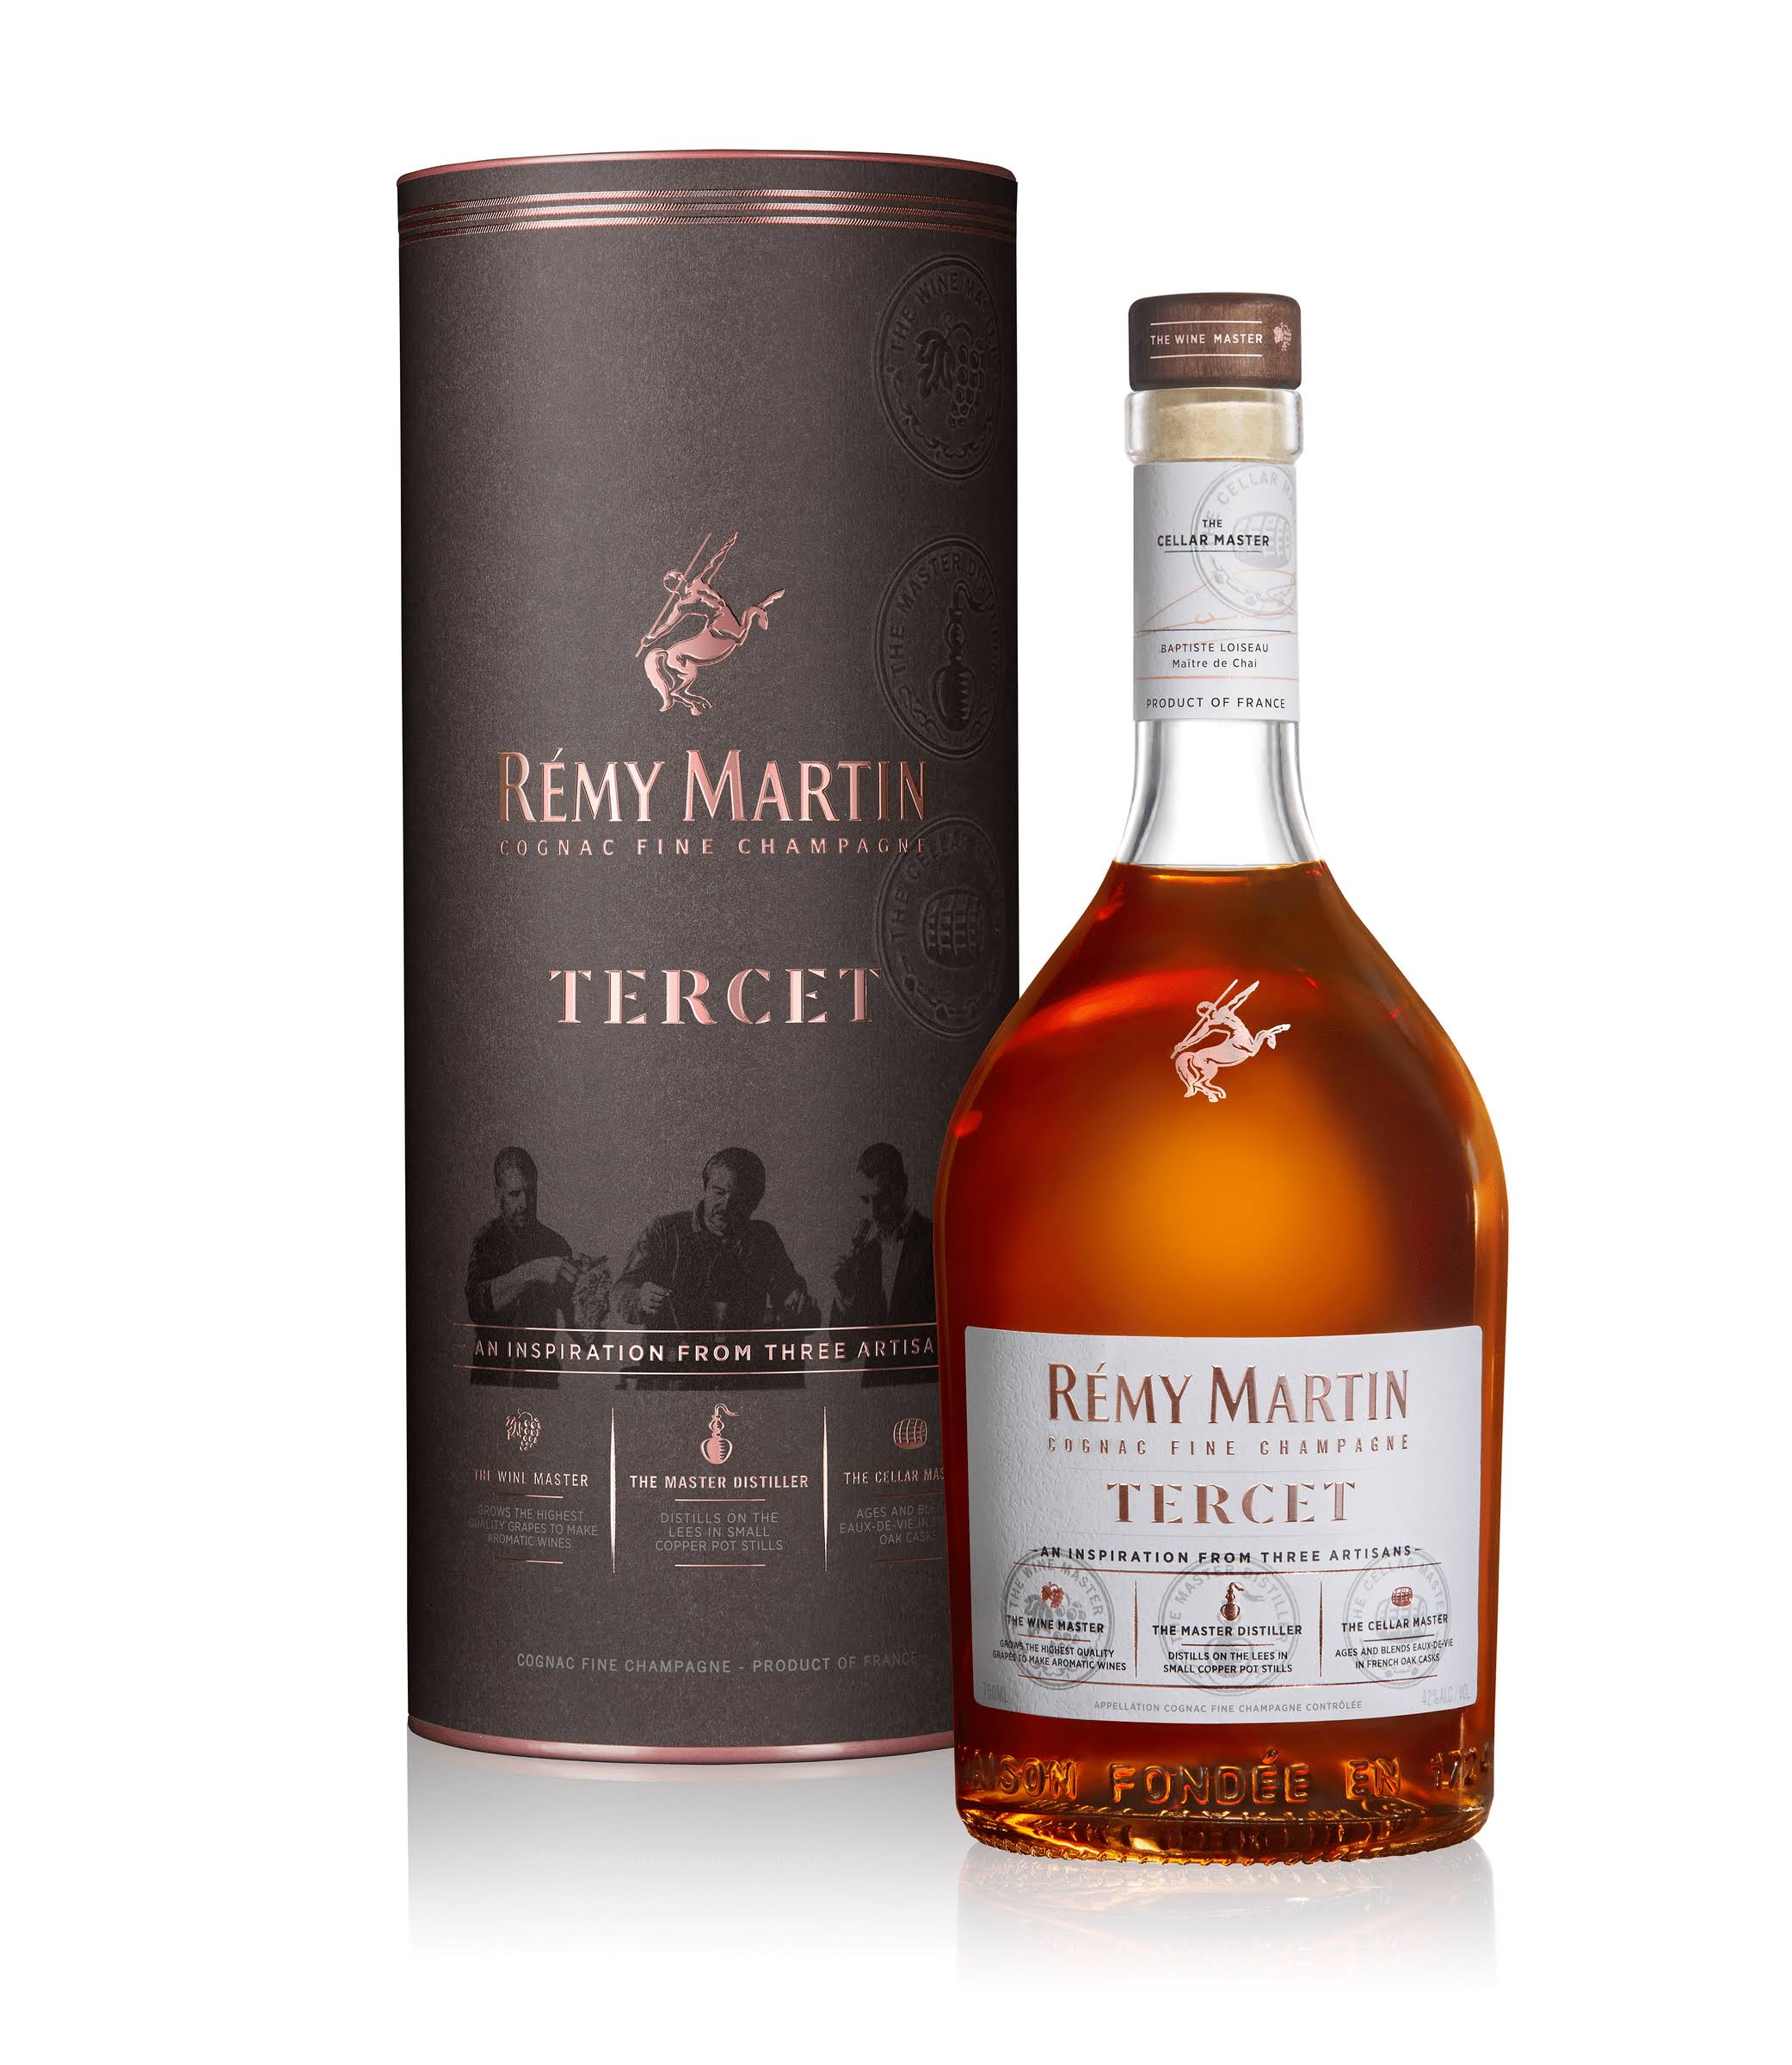 Remy Martin Tercet Cognac 75cL Golden Amber